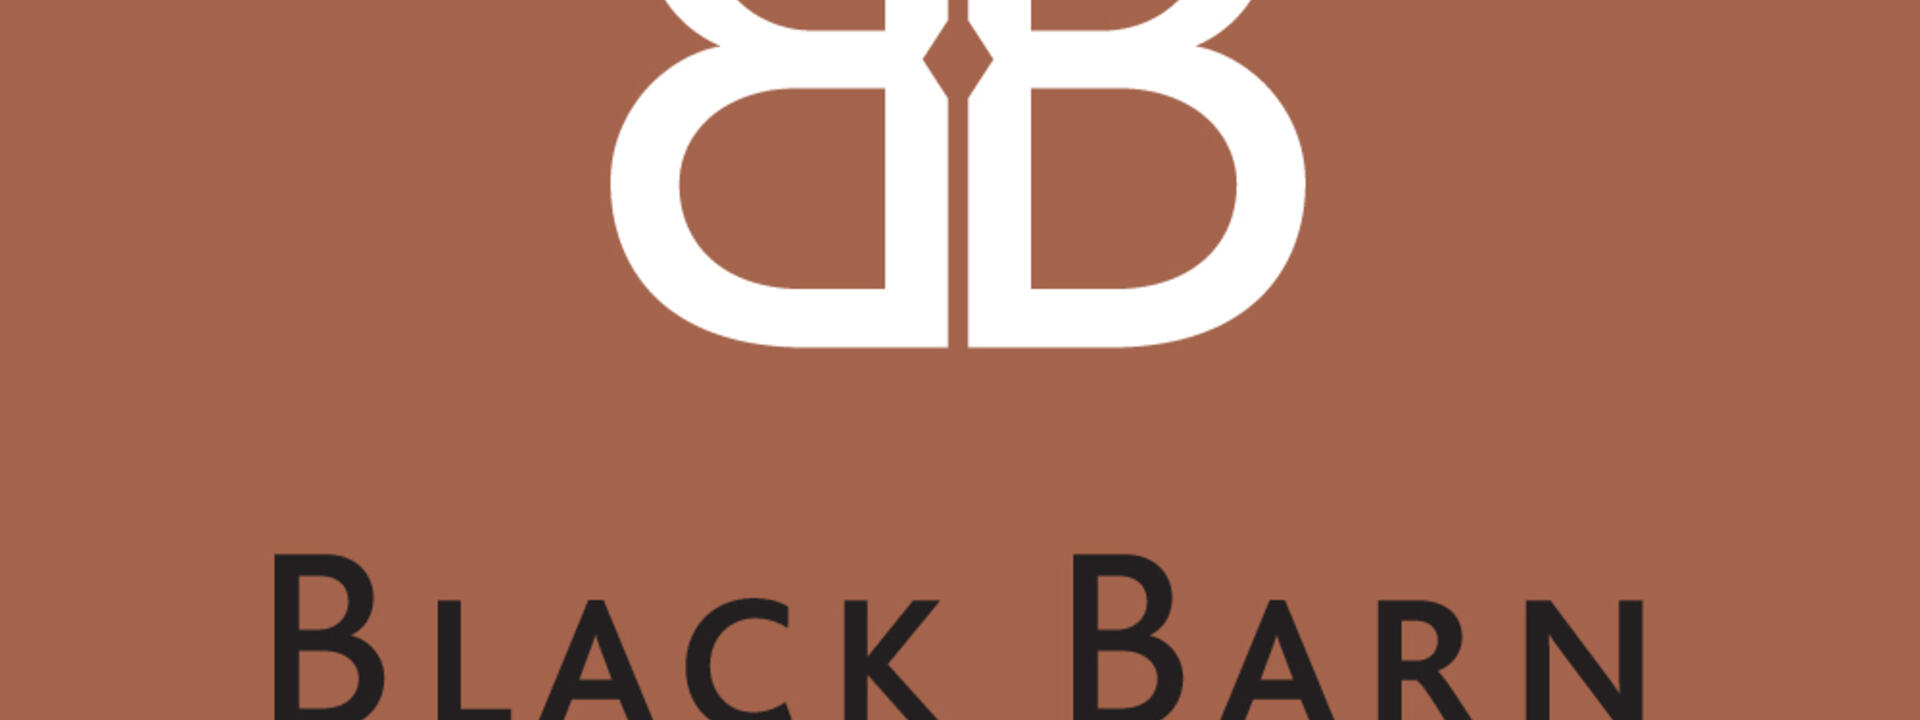 Black-Barn-main-logo-1000x1000px_0.jpg